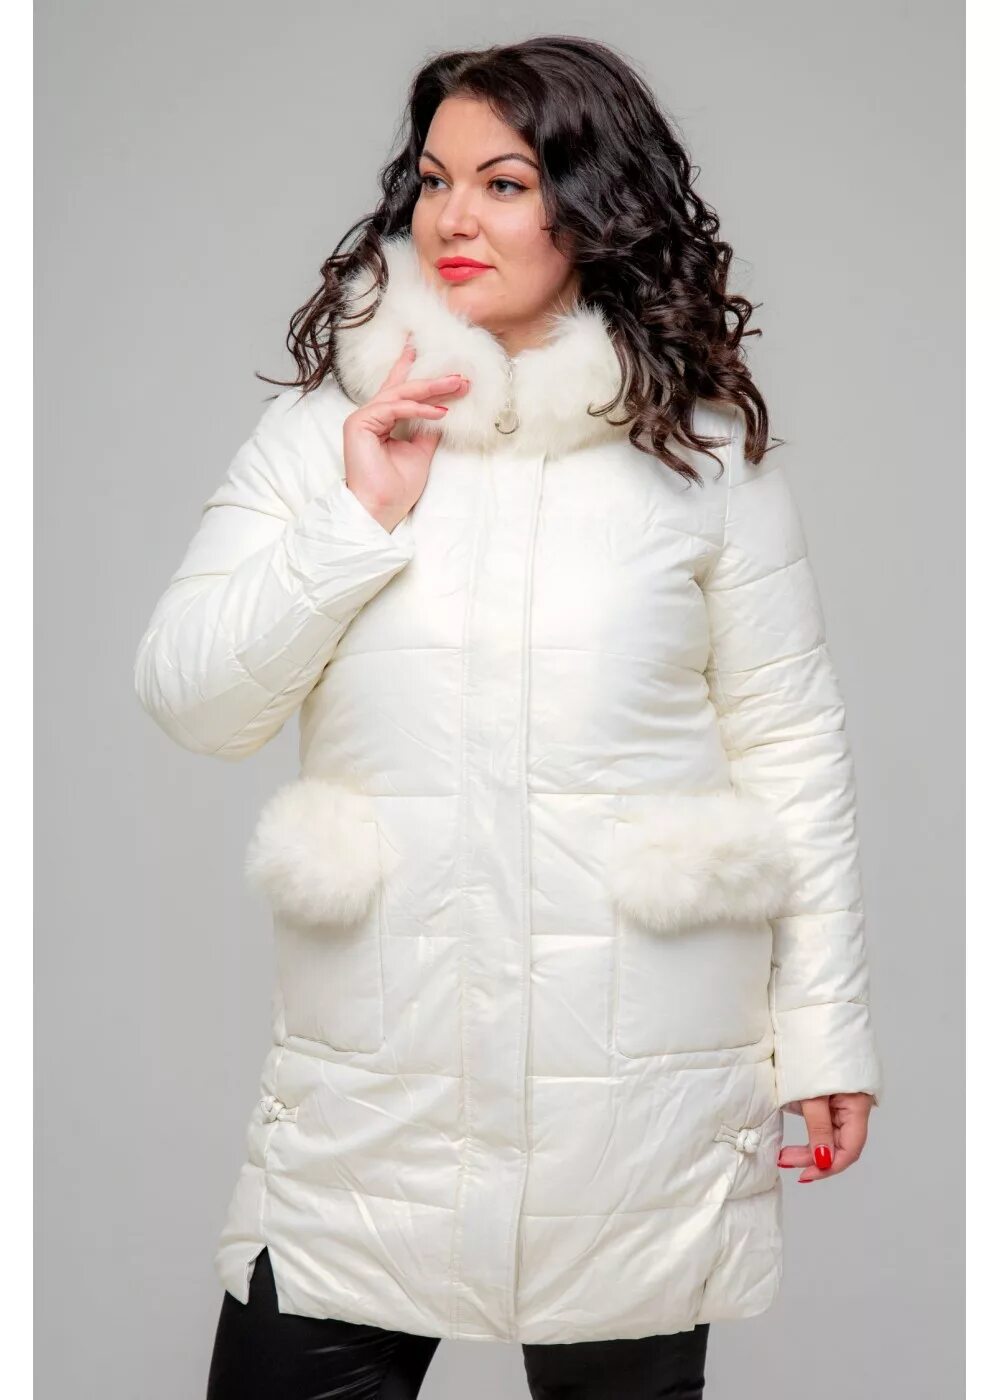 Пуховик для полных женщин. Куртки для полных женщин зимние. Зимняя куртка женская для полных. Зимние куртки женские больших размеров.